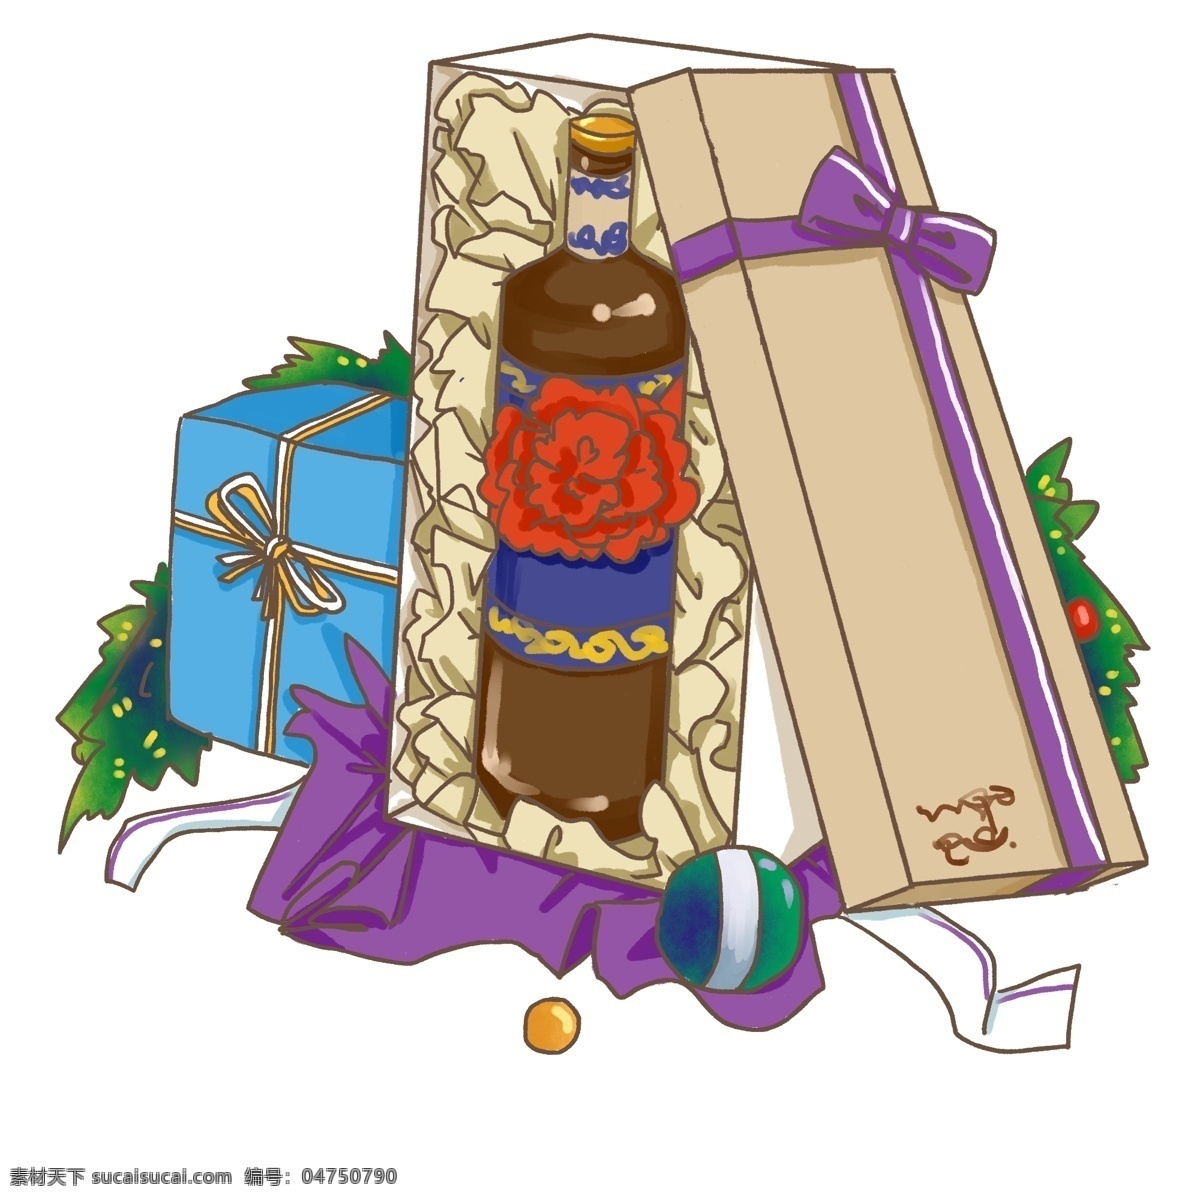 平安夜 圣诞节 礼物 盒 打开 酒水 礼物盒 紫色 蓝色 打开的礼物 松枝 圣诞元素